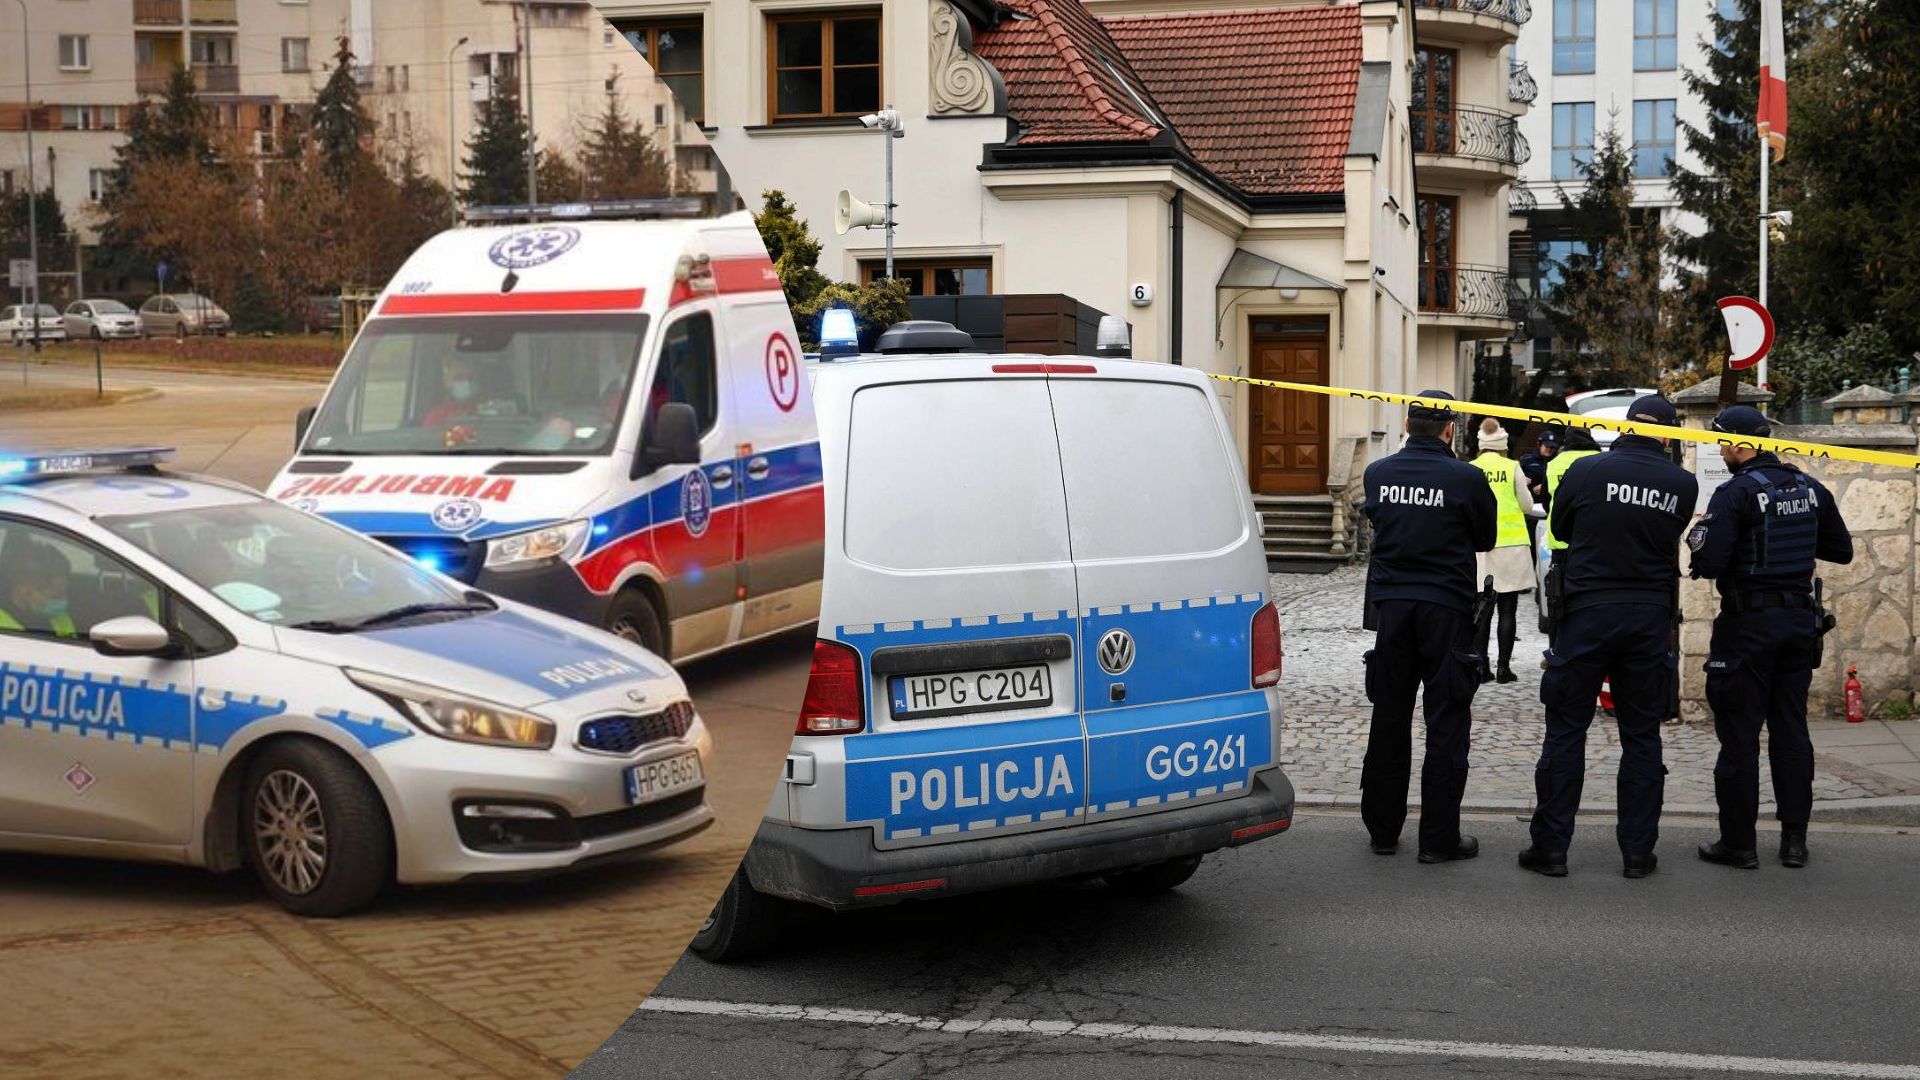 Що кажуть очевидці про самопідпал під консульством у Кракові